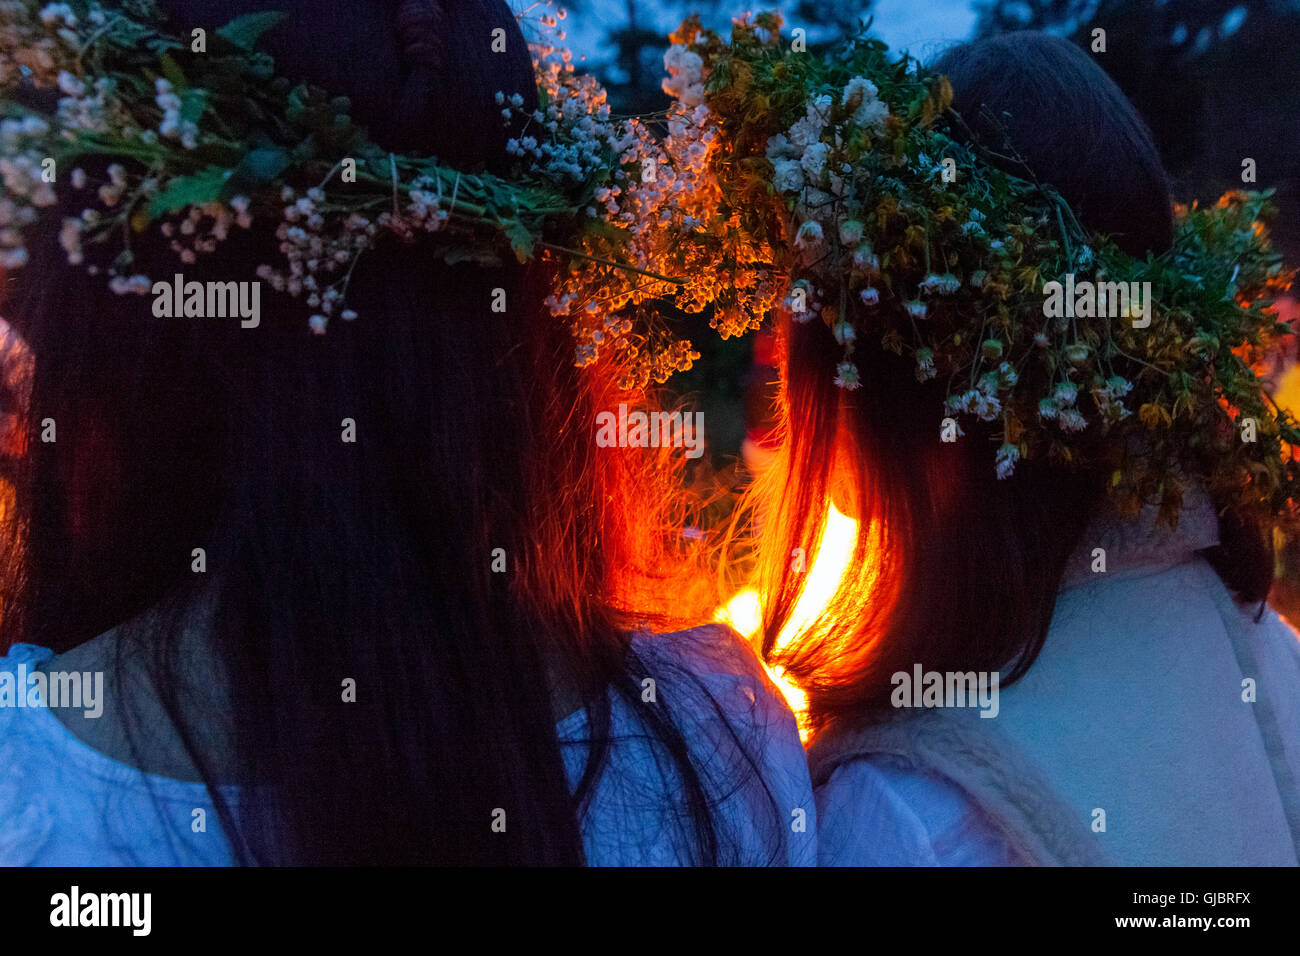 Mittsommernacht, Mädchen in Kränze auf dem Kopf, durch das Feuer, Podlachien, Polen, Stockfoto